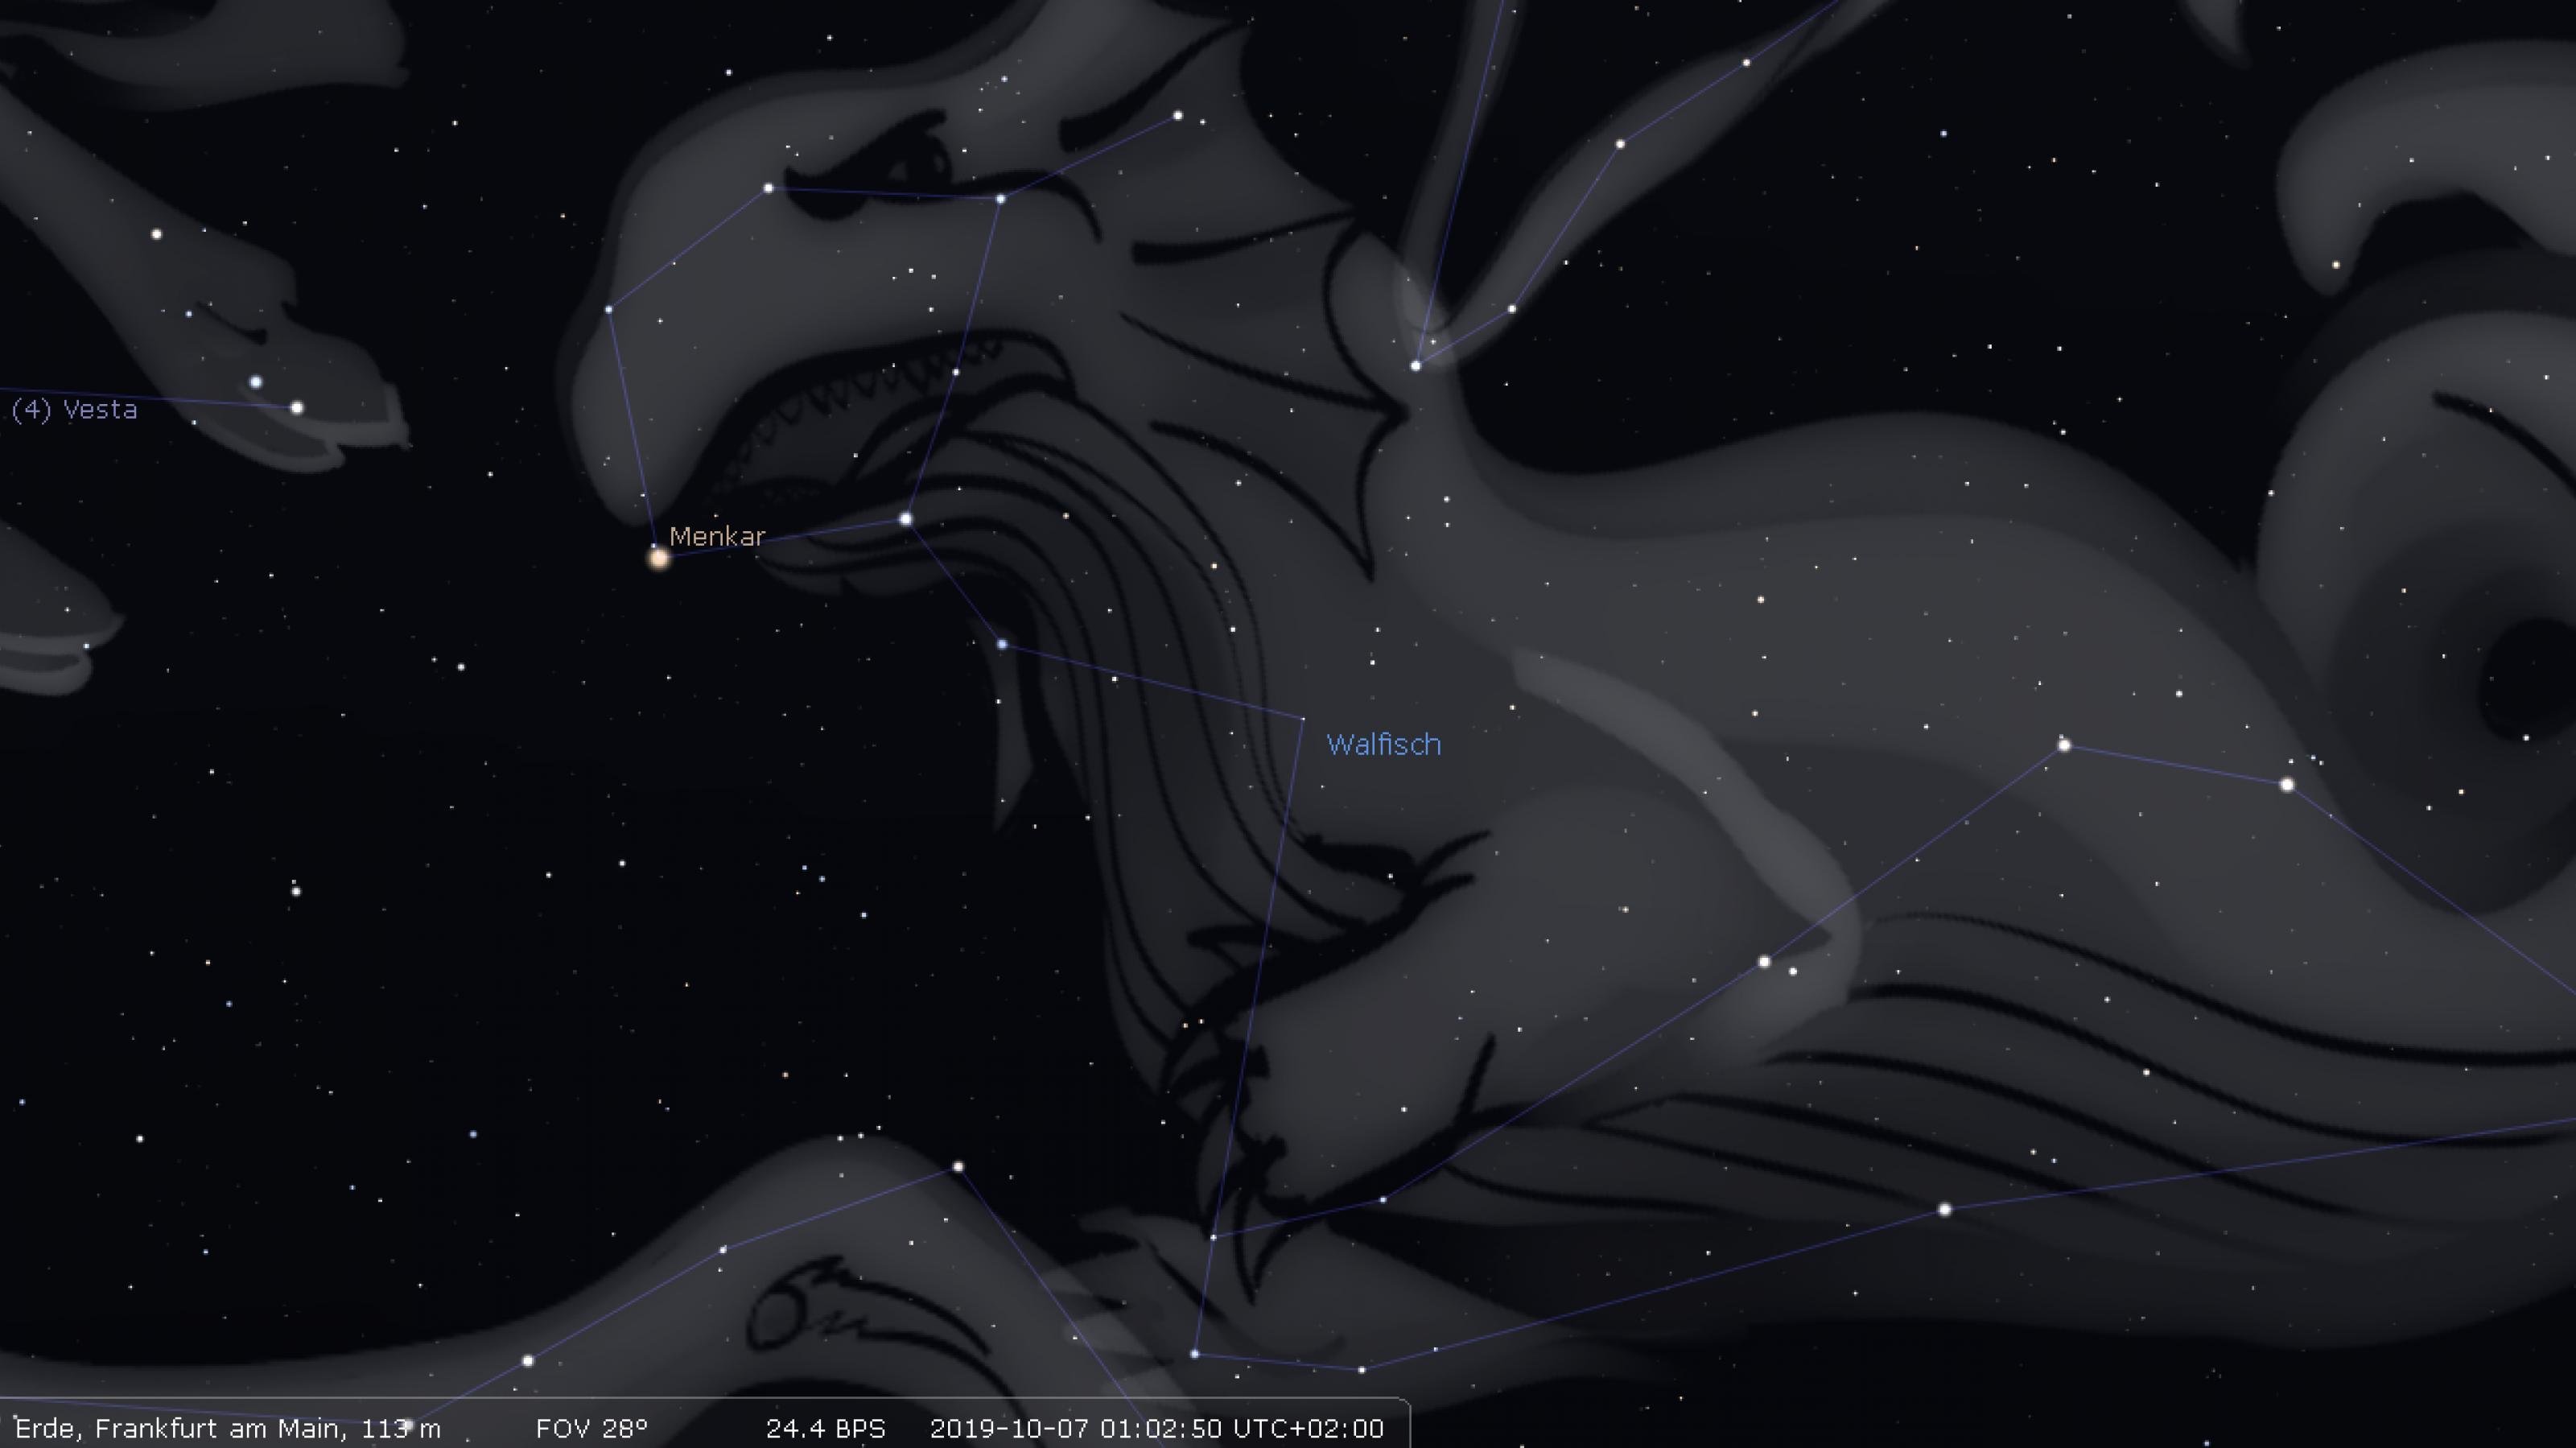 Das Sternbild Walfisch in der Darstesllugn mit Stellarium.